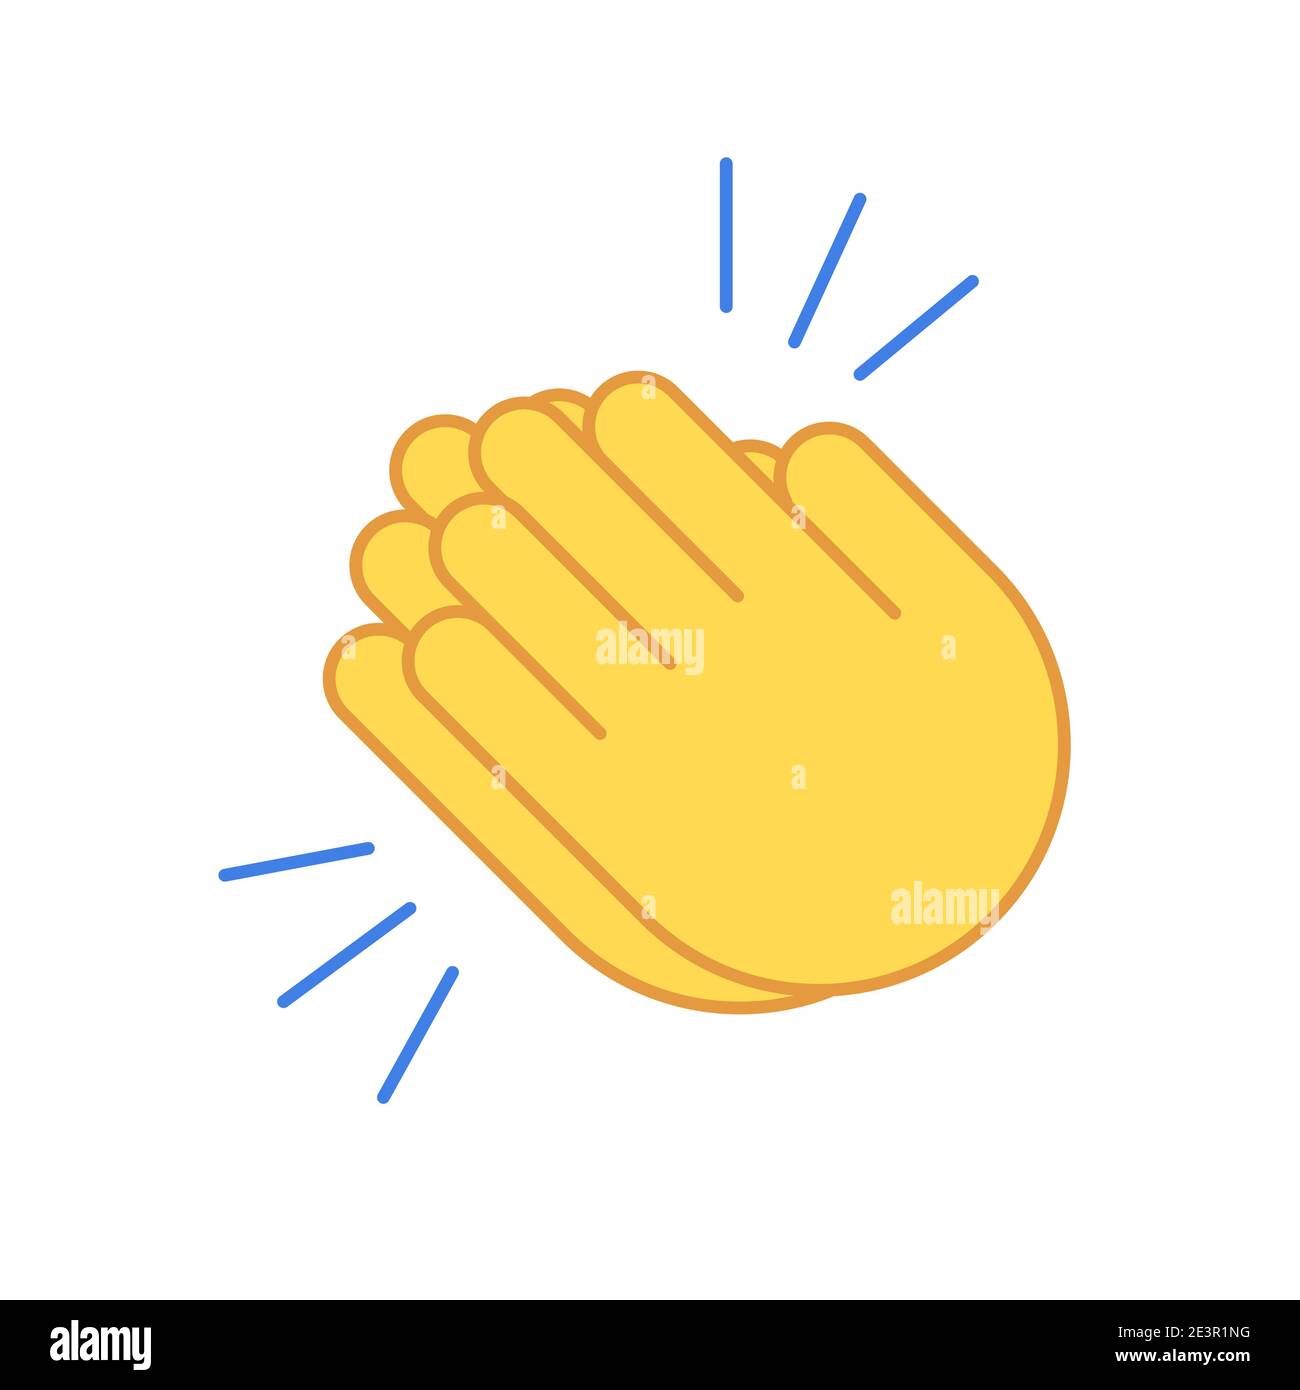 Emoji clap hand emoticon set encouragement cartoon applause icon. Clap  hands vector icon Stock Vector Image & Art - Alamy